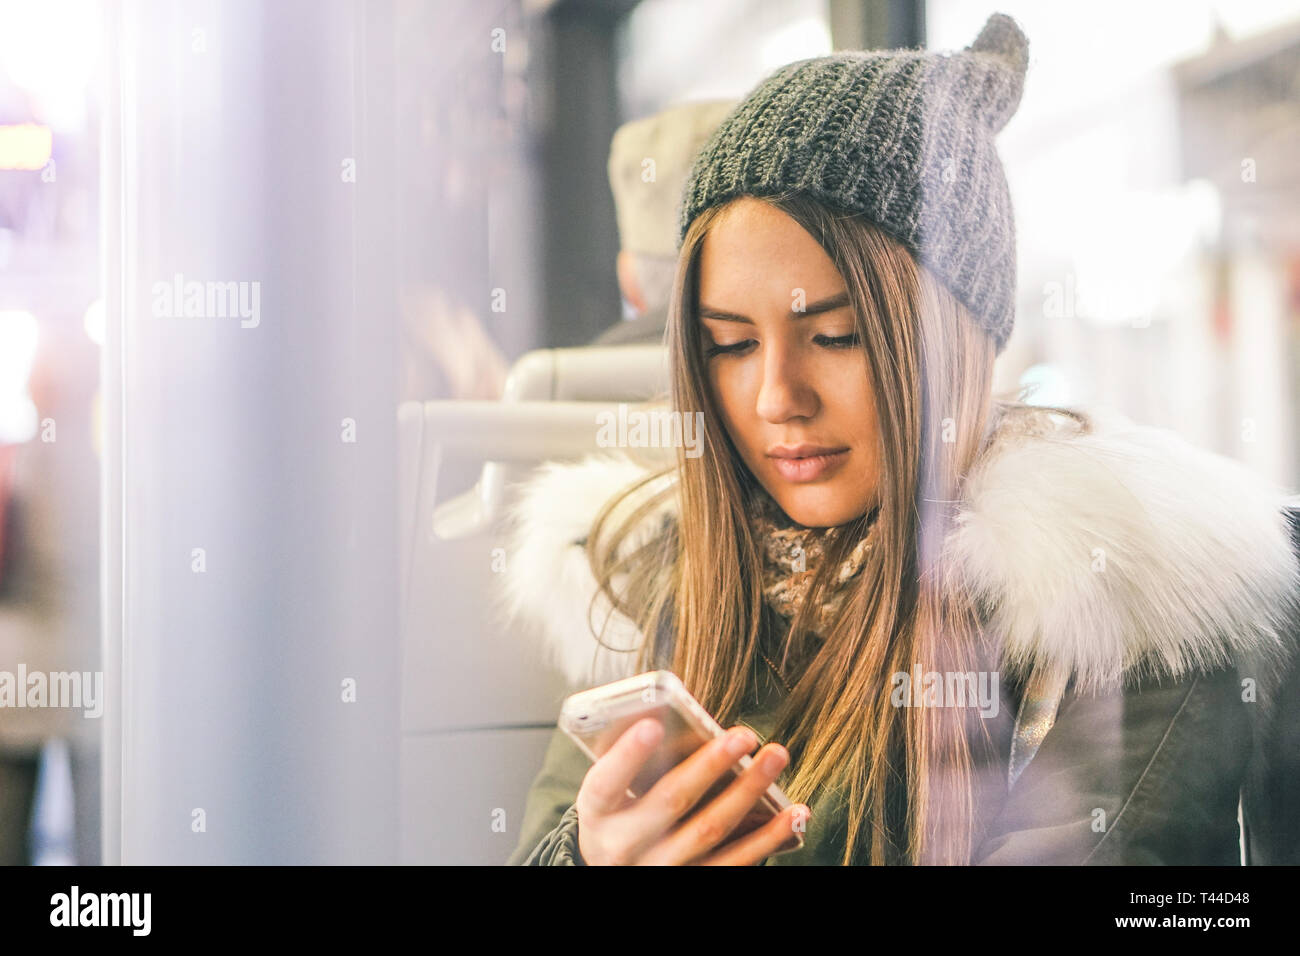 Jeune femme à l'aide de son téléphone intelligent tout en restant assis dans un bus - jolie fille se connecter sur son réseau social avec son téléphone portable Banque D'Images